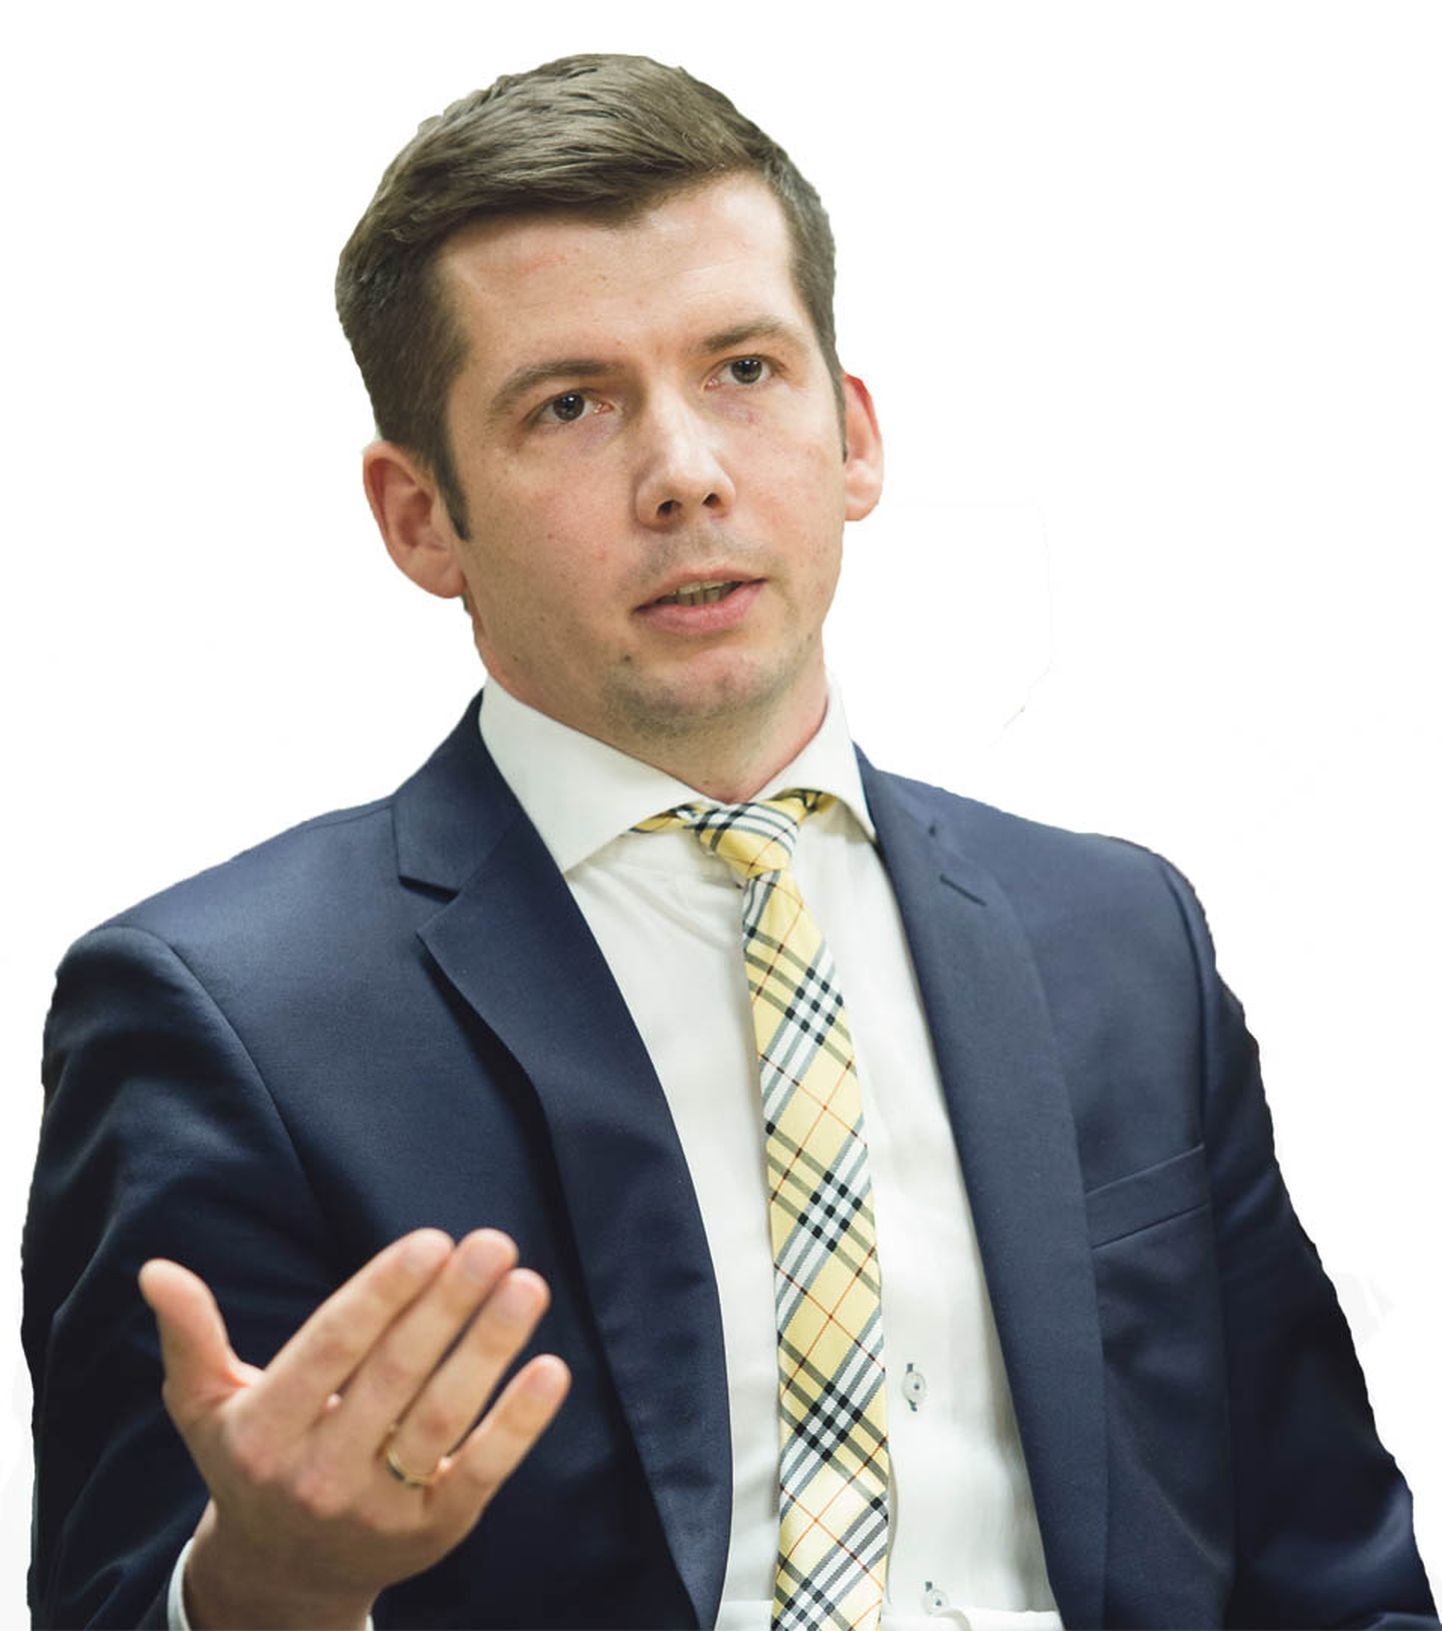 Мартин Репинской, руководитель Йыхвиского отделения Центристской партии